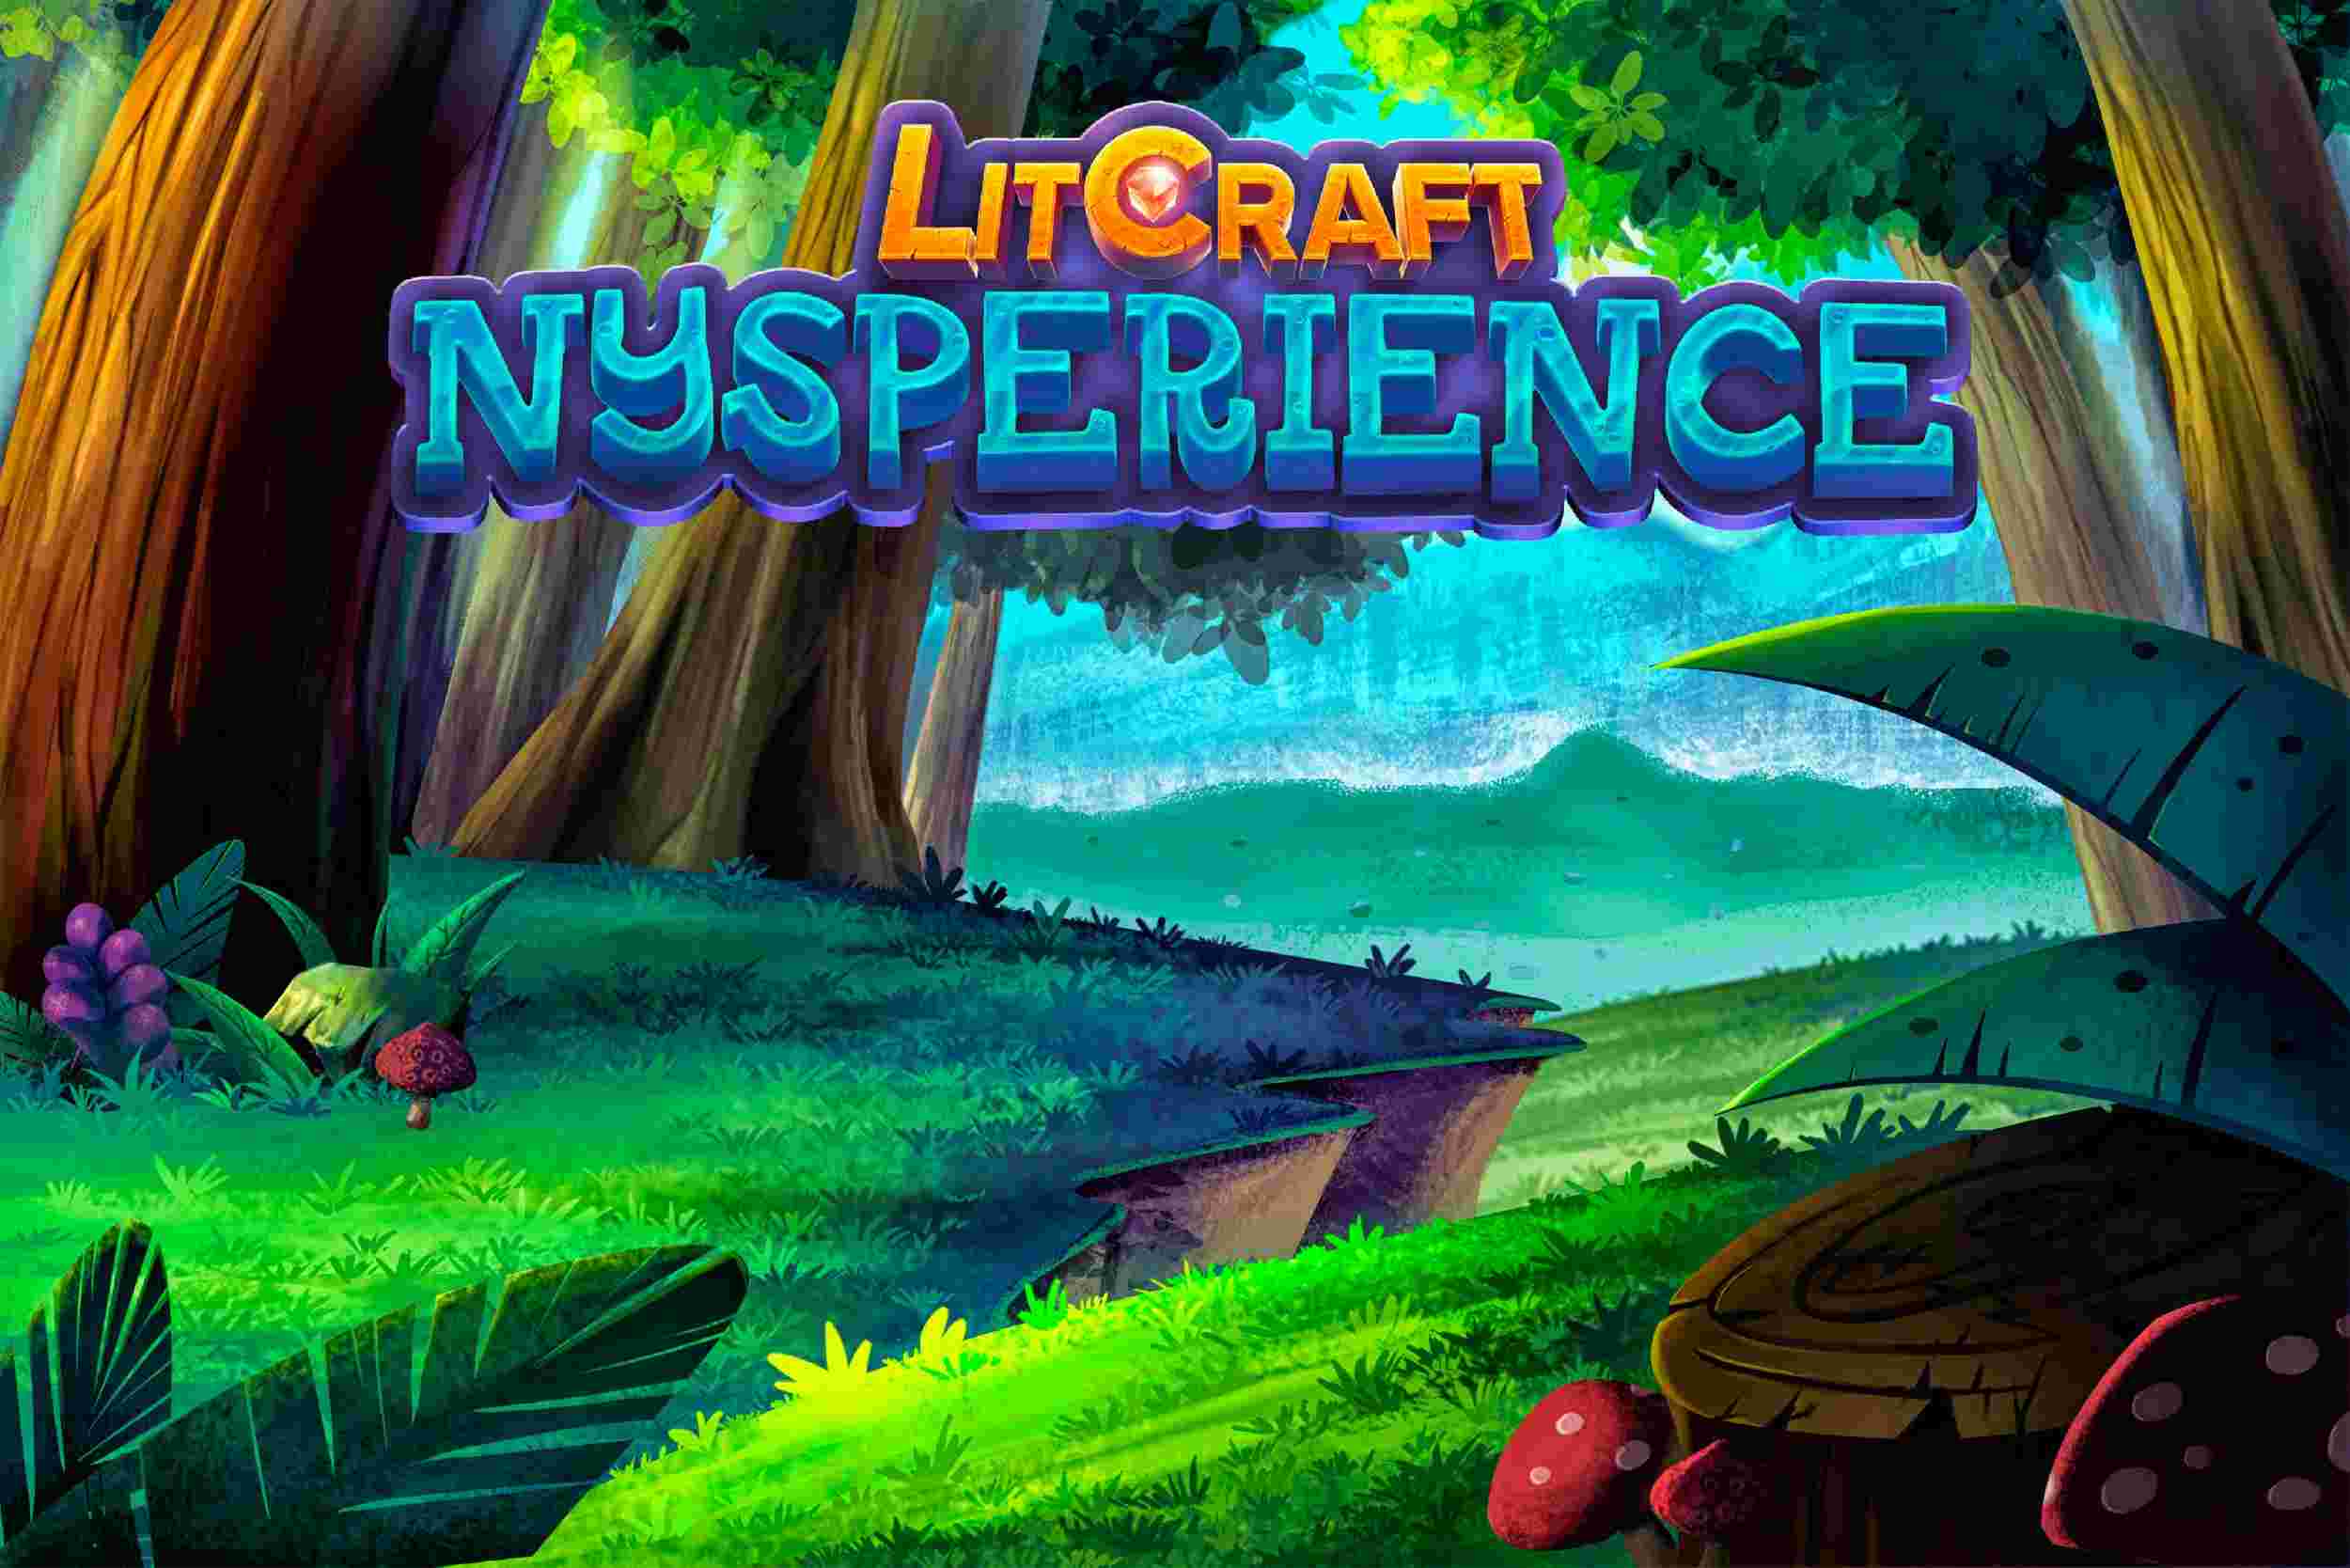 LitCraft: Nysperience - Análise do jogo